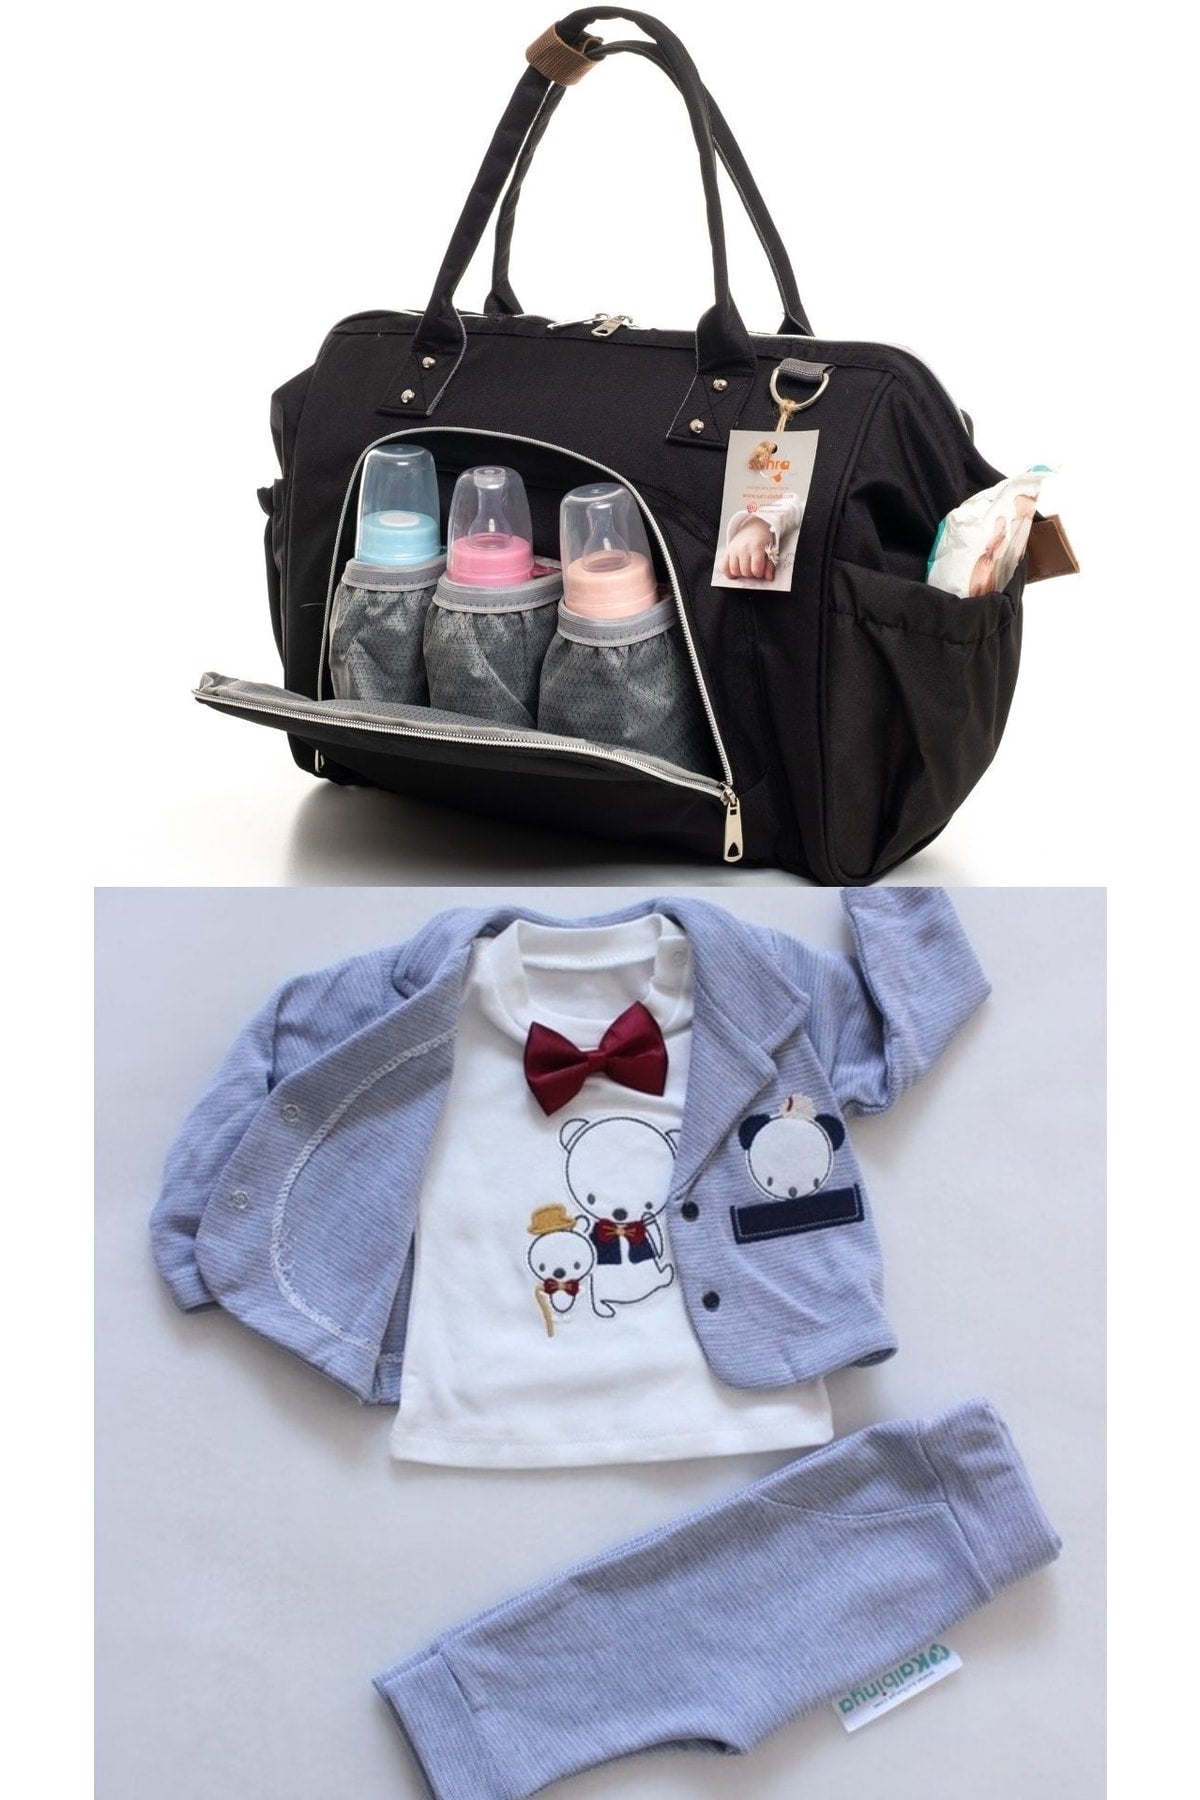 Elegance Mother Baby Care Shoulder-Handbag And 100% Cotton Hospital Outlet Set